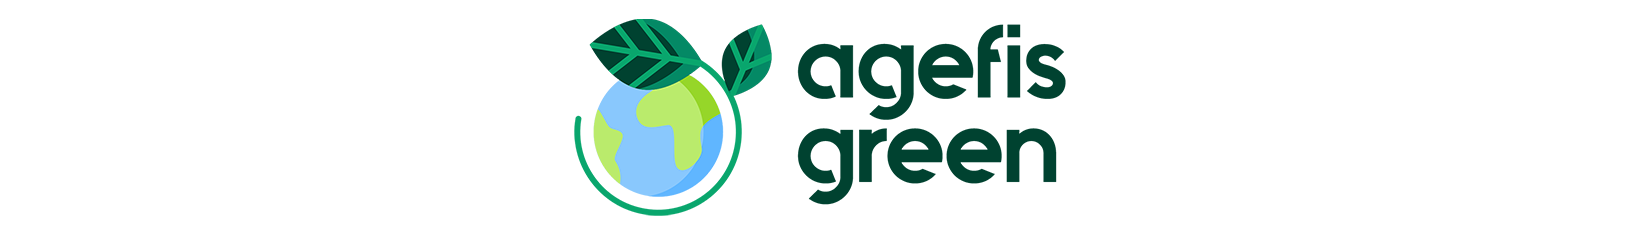 logo-agefisgreen-pianeta-verde